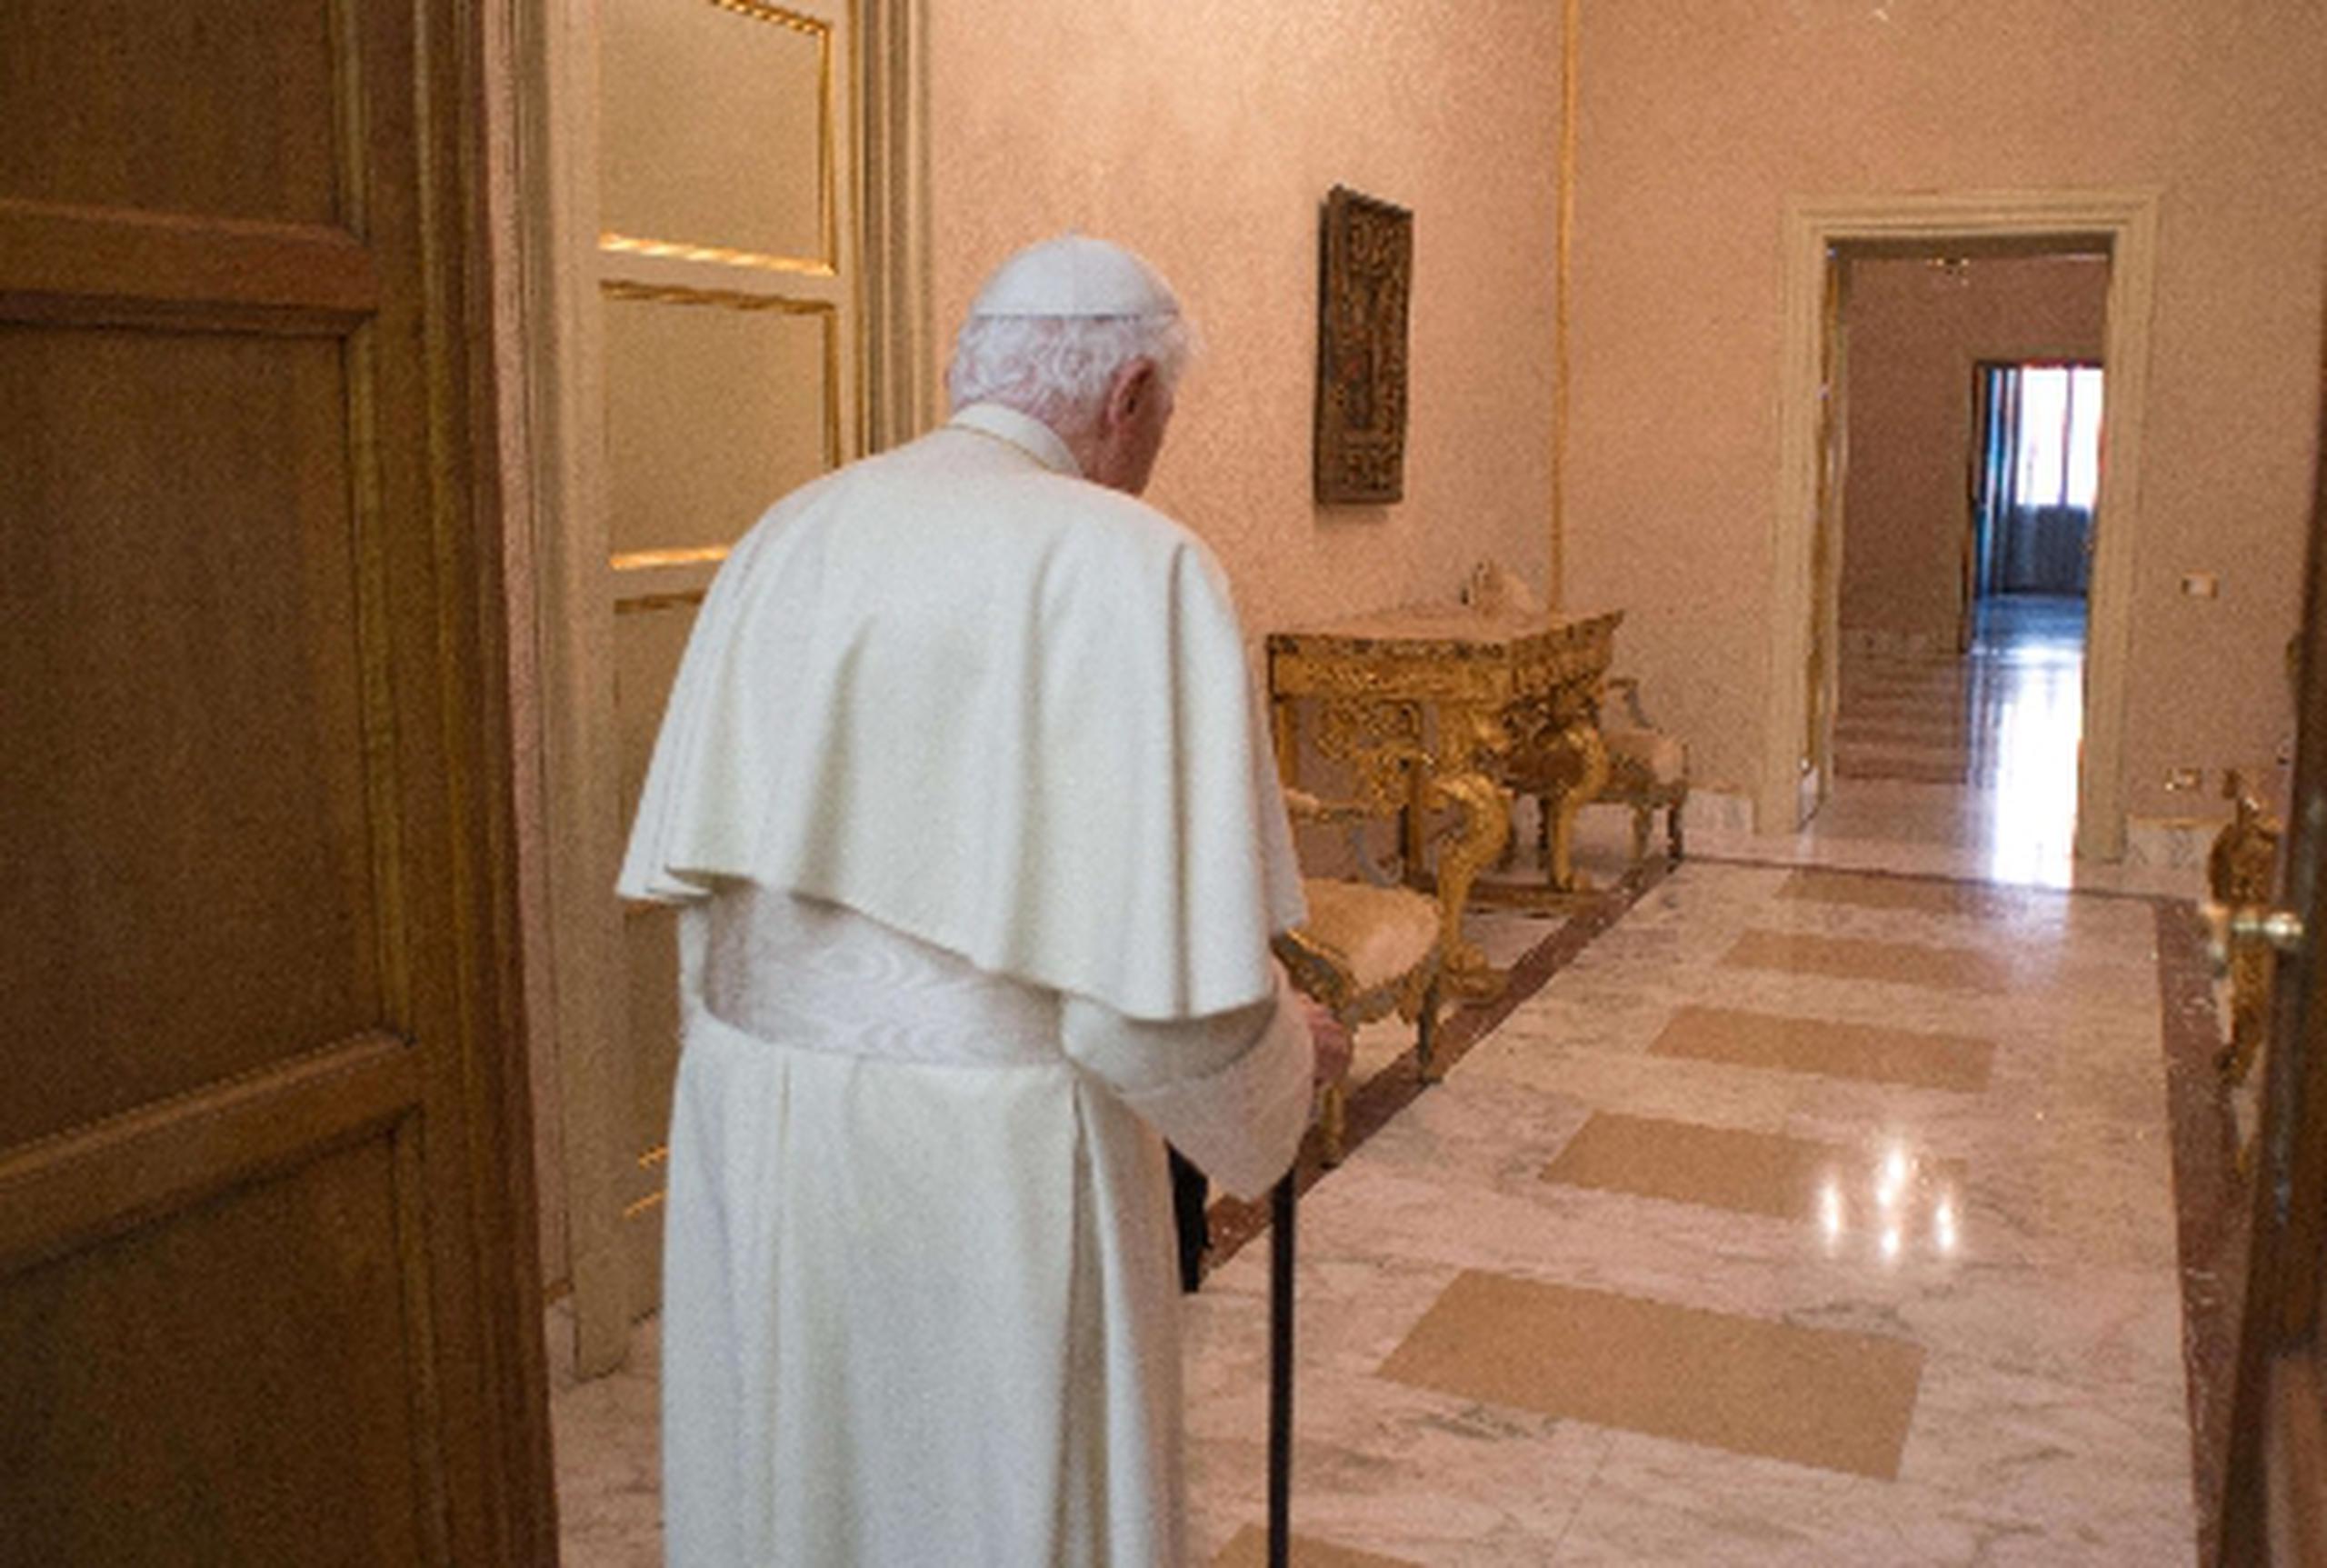 En su primer día como ex papa, Benedicto XVI ofició una misa, después dedicó unas horas a a rezar y por la tarde rezó el rosario mientras paseaba por los jardines de Castel Gandolfo.&nbsp;<font color="yellow">(AFP  / L’Osservatore Romano)</font>